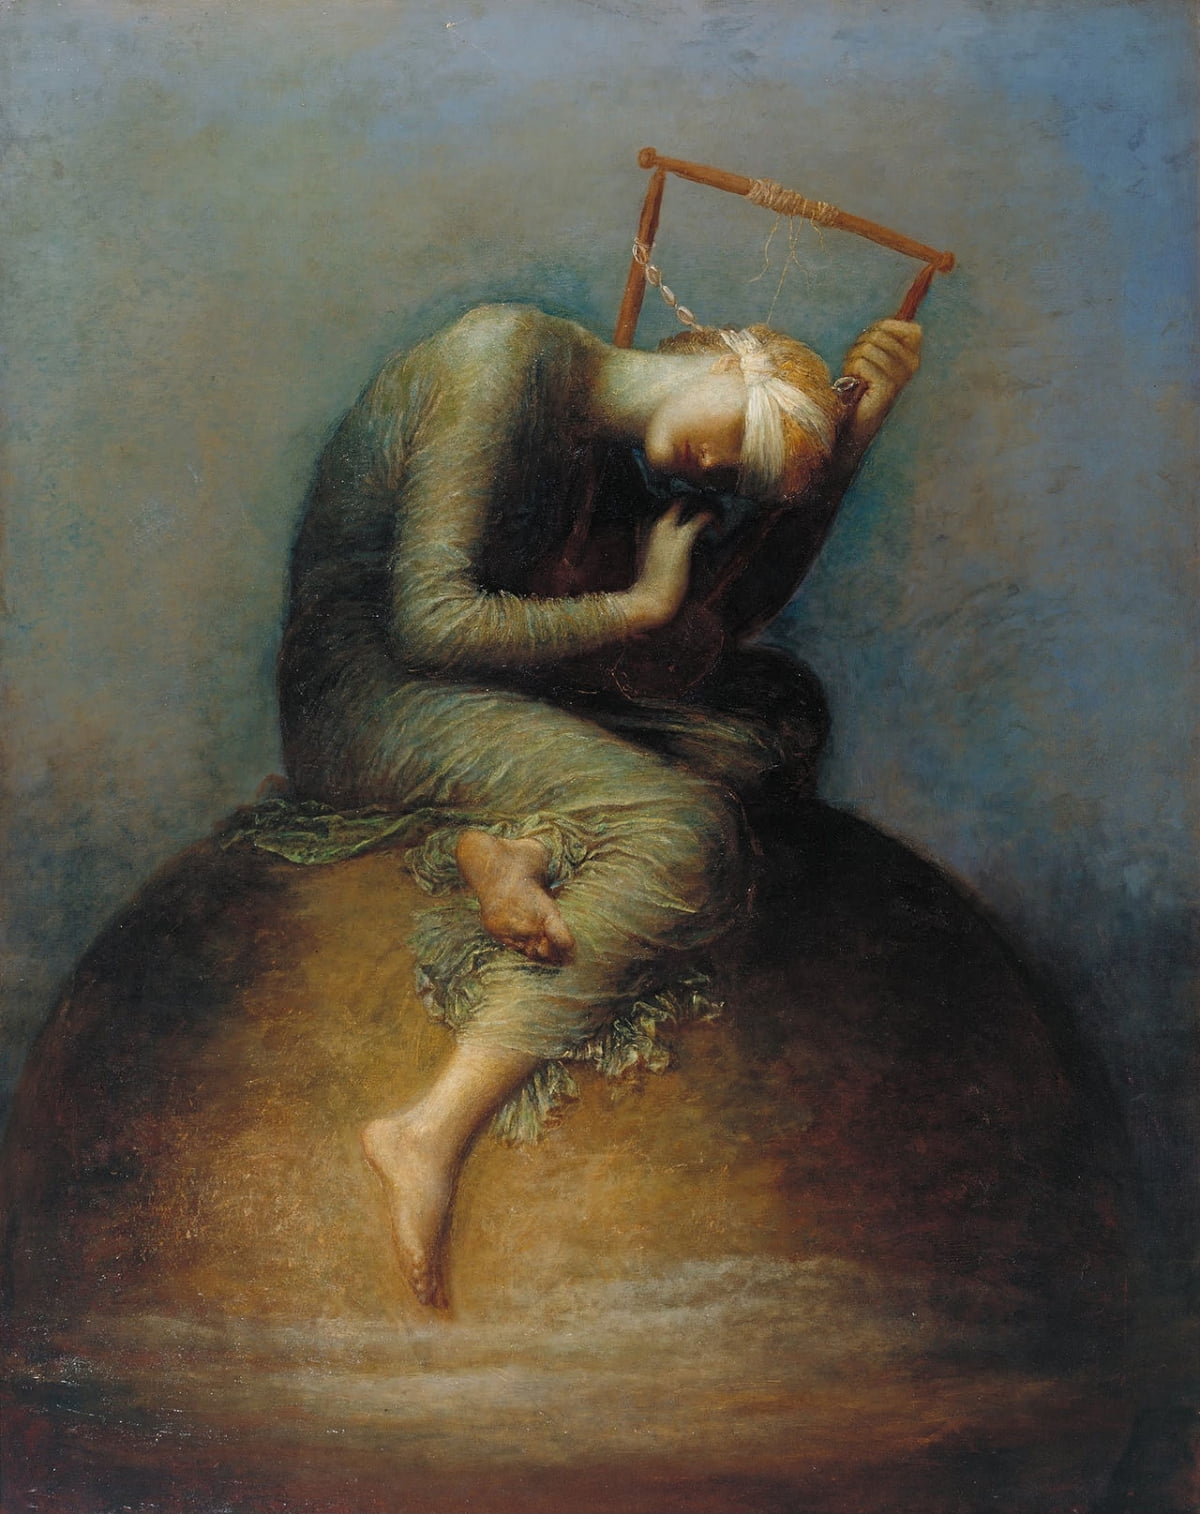 희망(1886). 손녀를 잃은 슬픔을 담은 그림이다. 와츠는 자신의 작품을 이렇게 설명하고 있다. "지구본 위에 앉아있는 희망, 두 눈엔 붕대를 감은 채 줄이 하나만 남은 리라를 연주하는 것. 어떻게든 온 힘을 다해 작은 소리를 내서 음악을 들으려는 것."/테이트